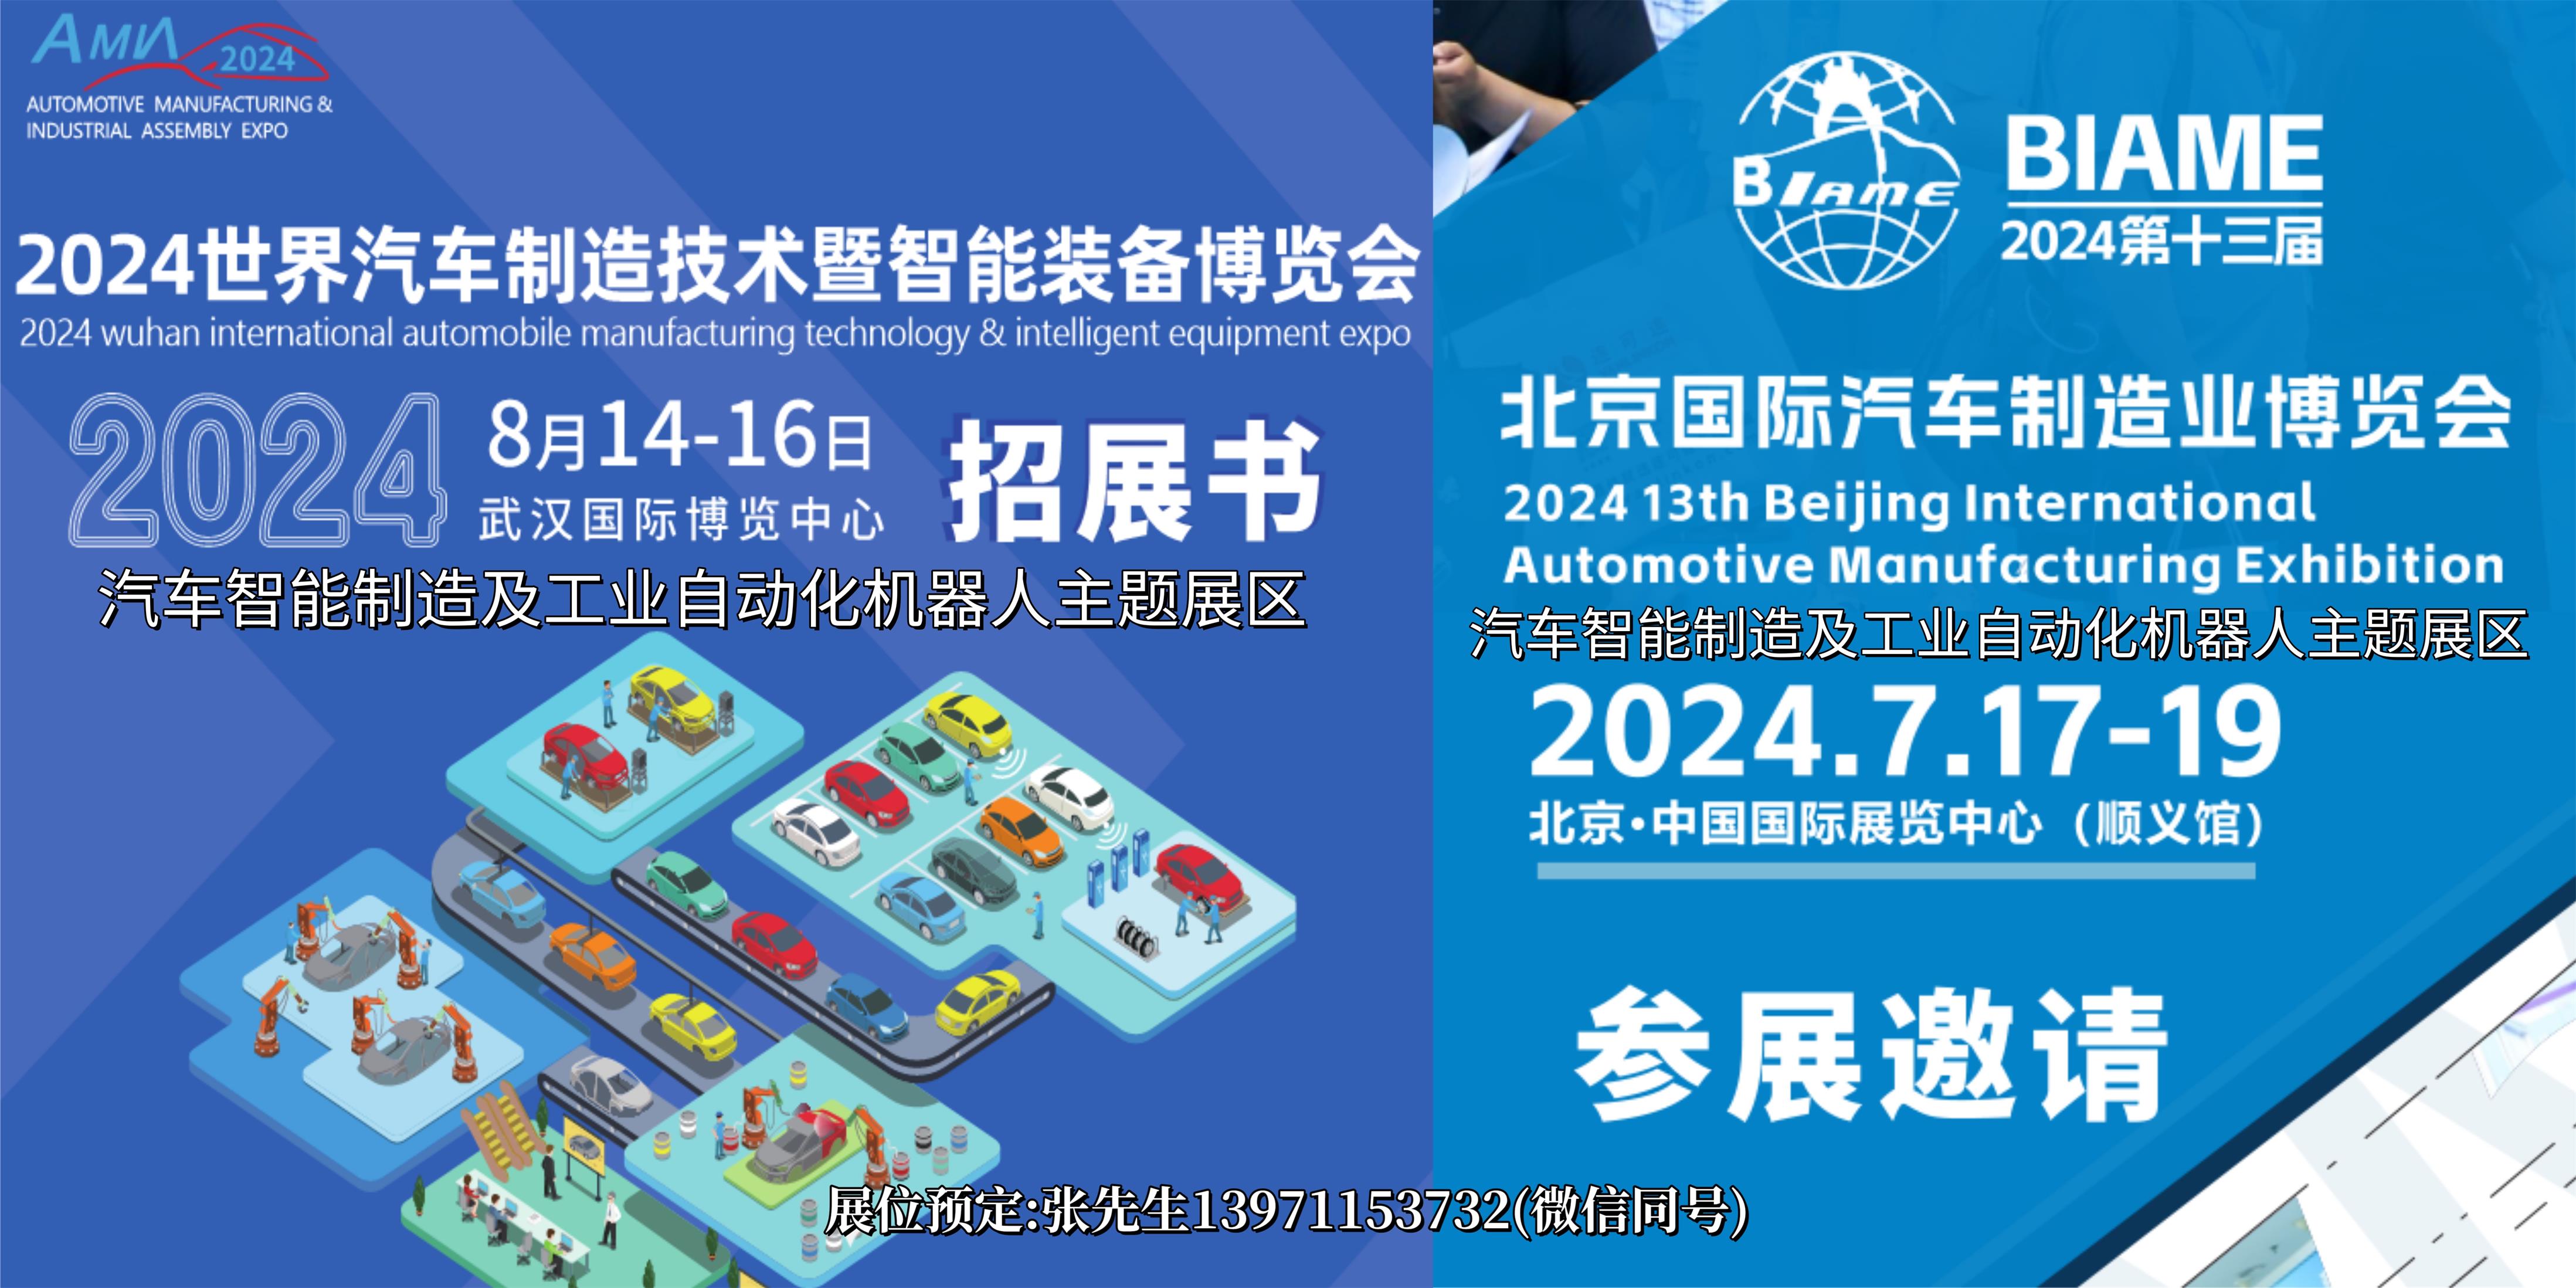 2024武漢北京汽車工業化機器人展圖片.jpg